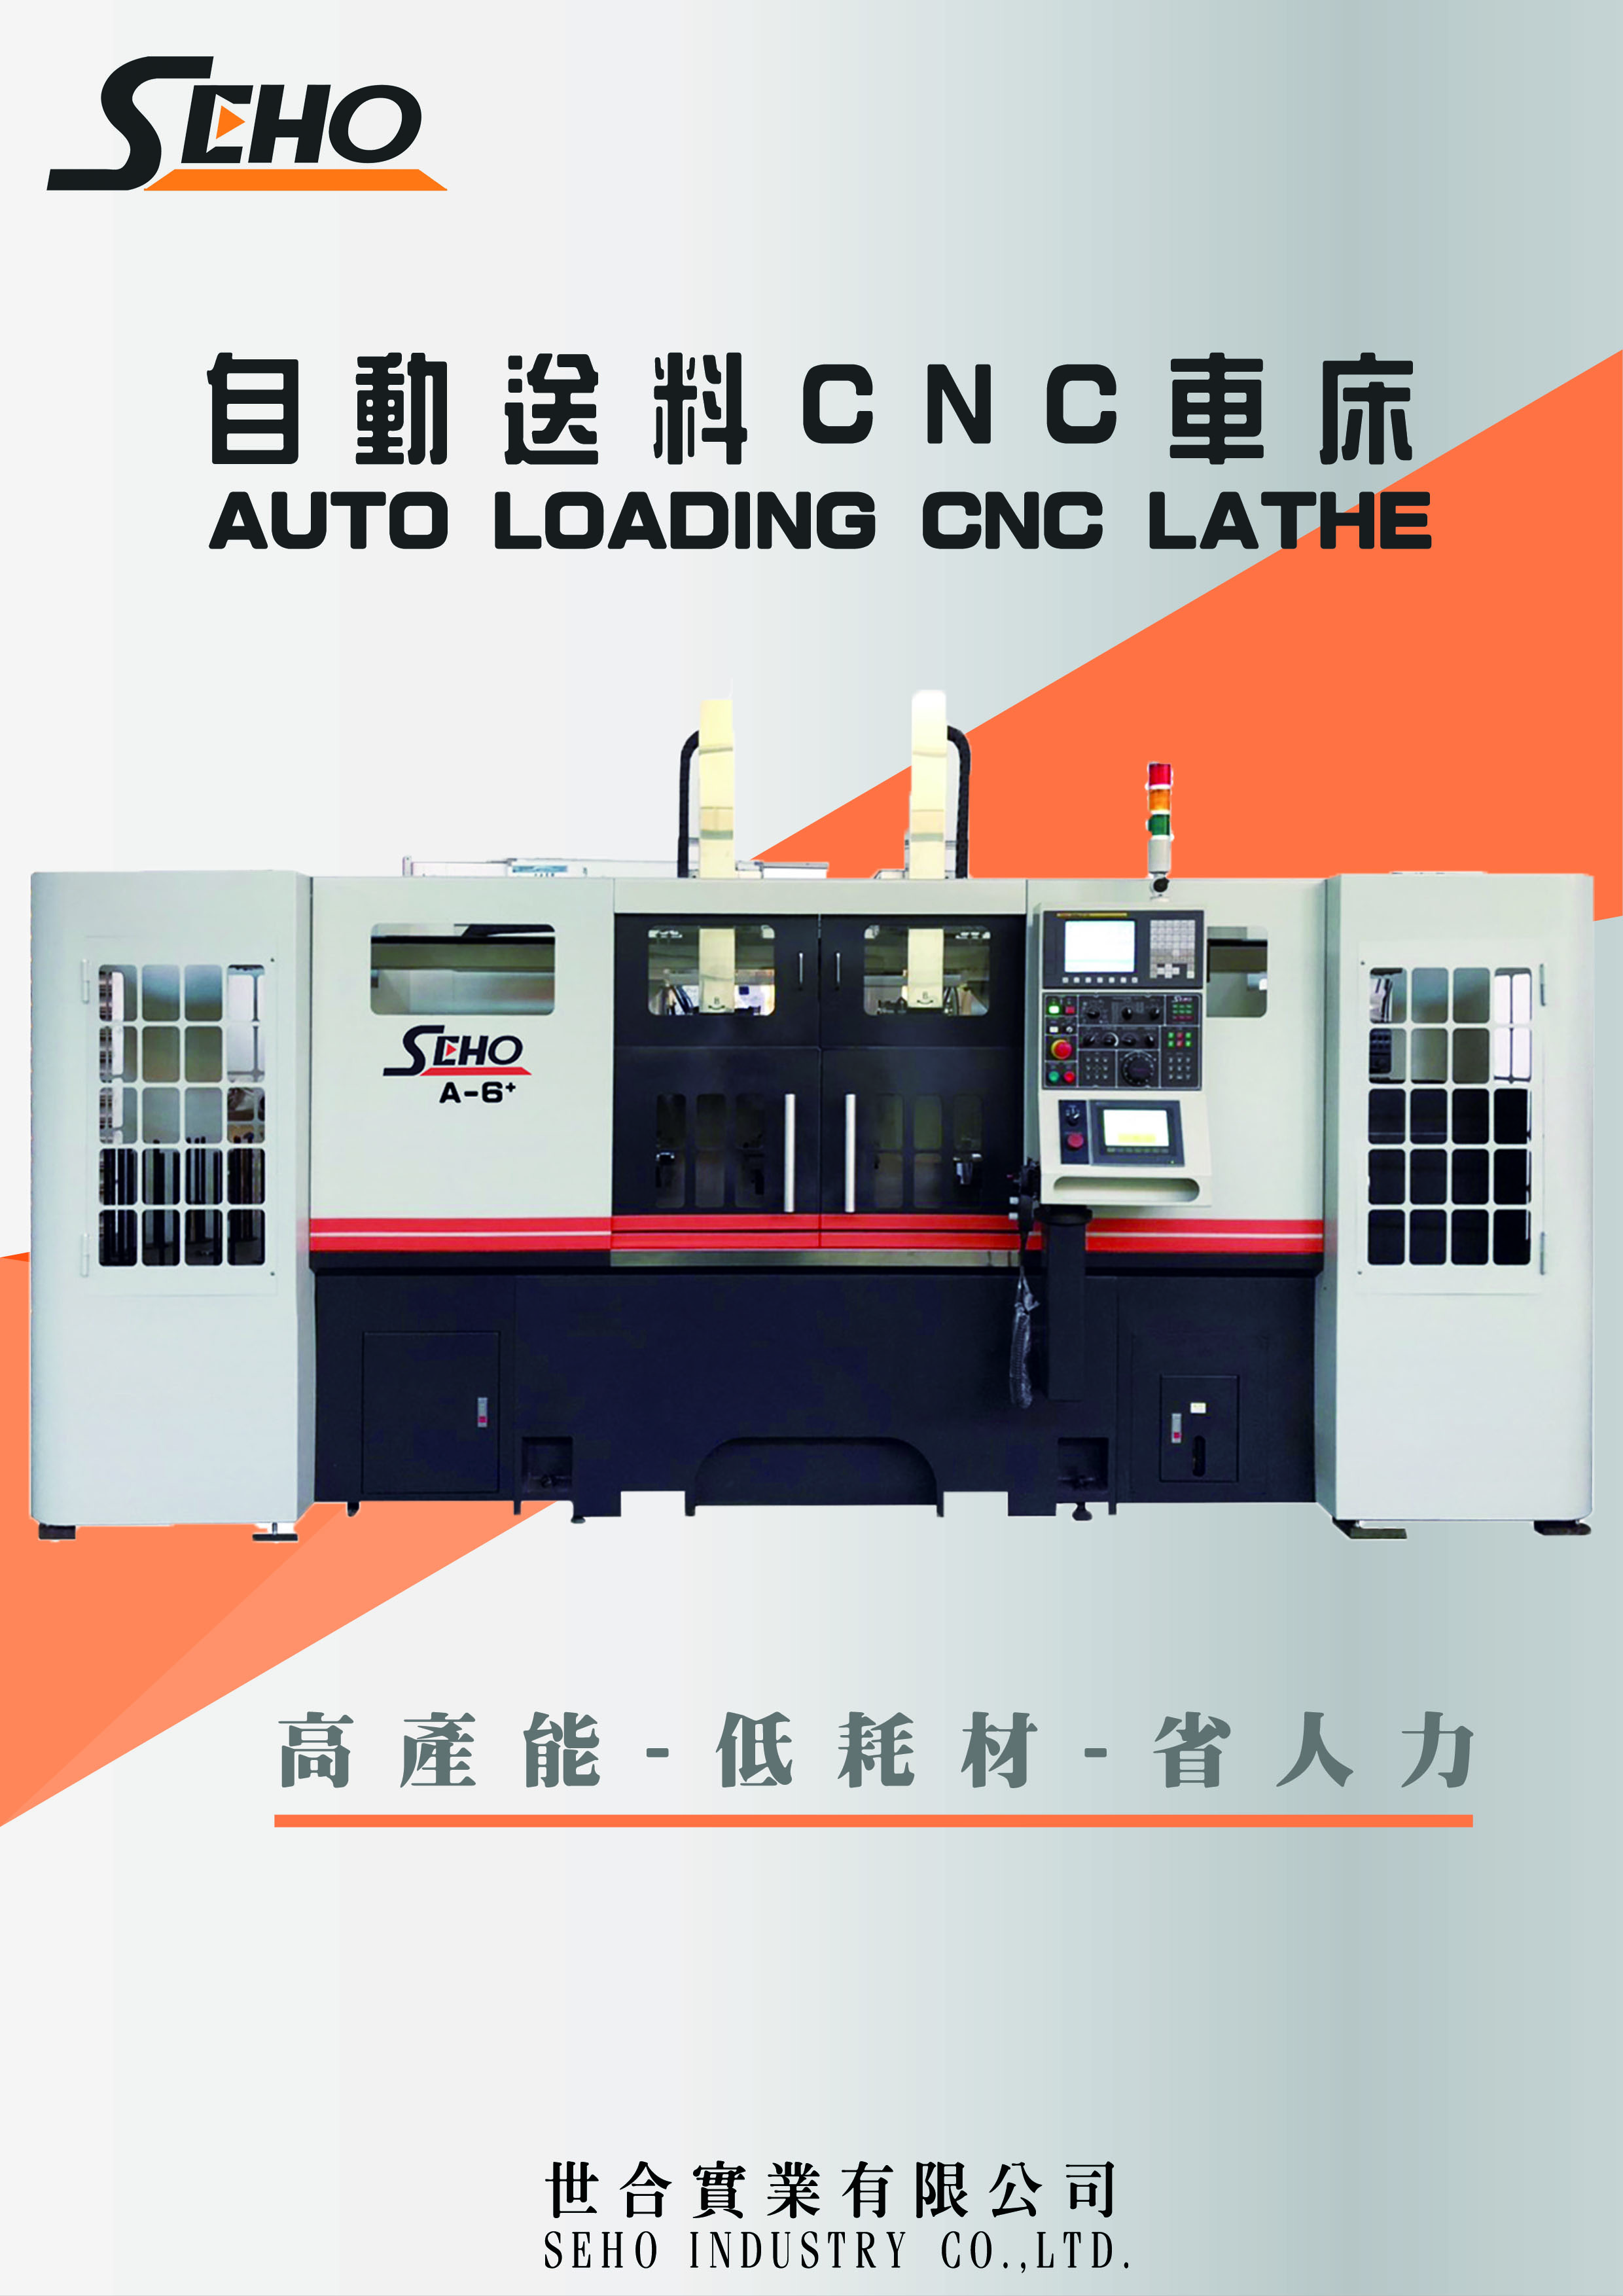 A_6_ Auto Loading CNC Lathe